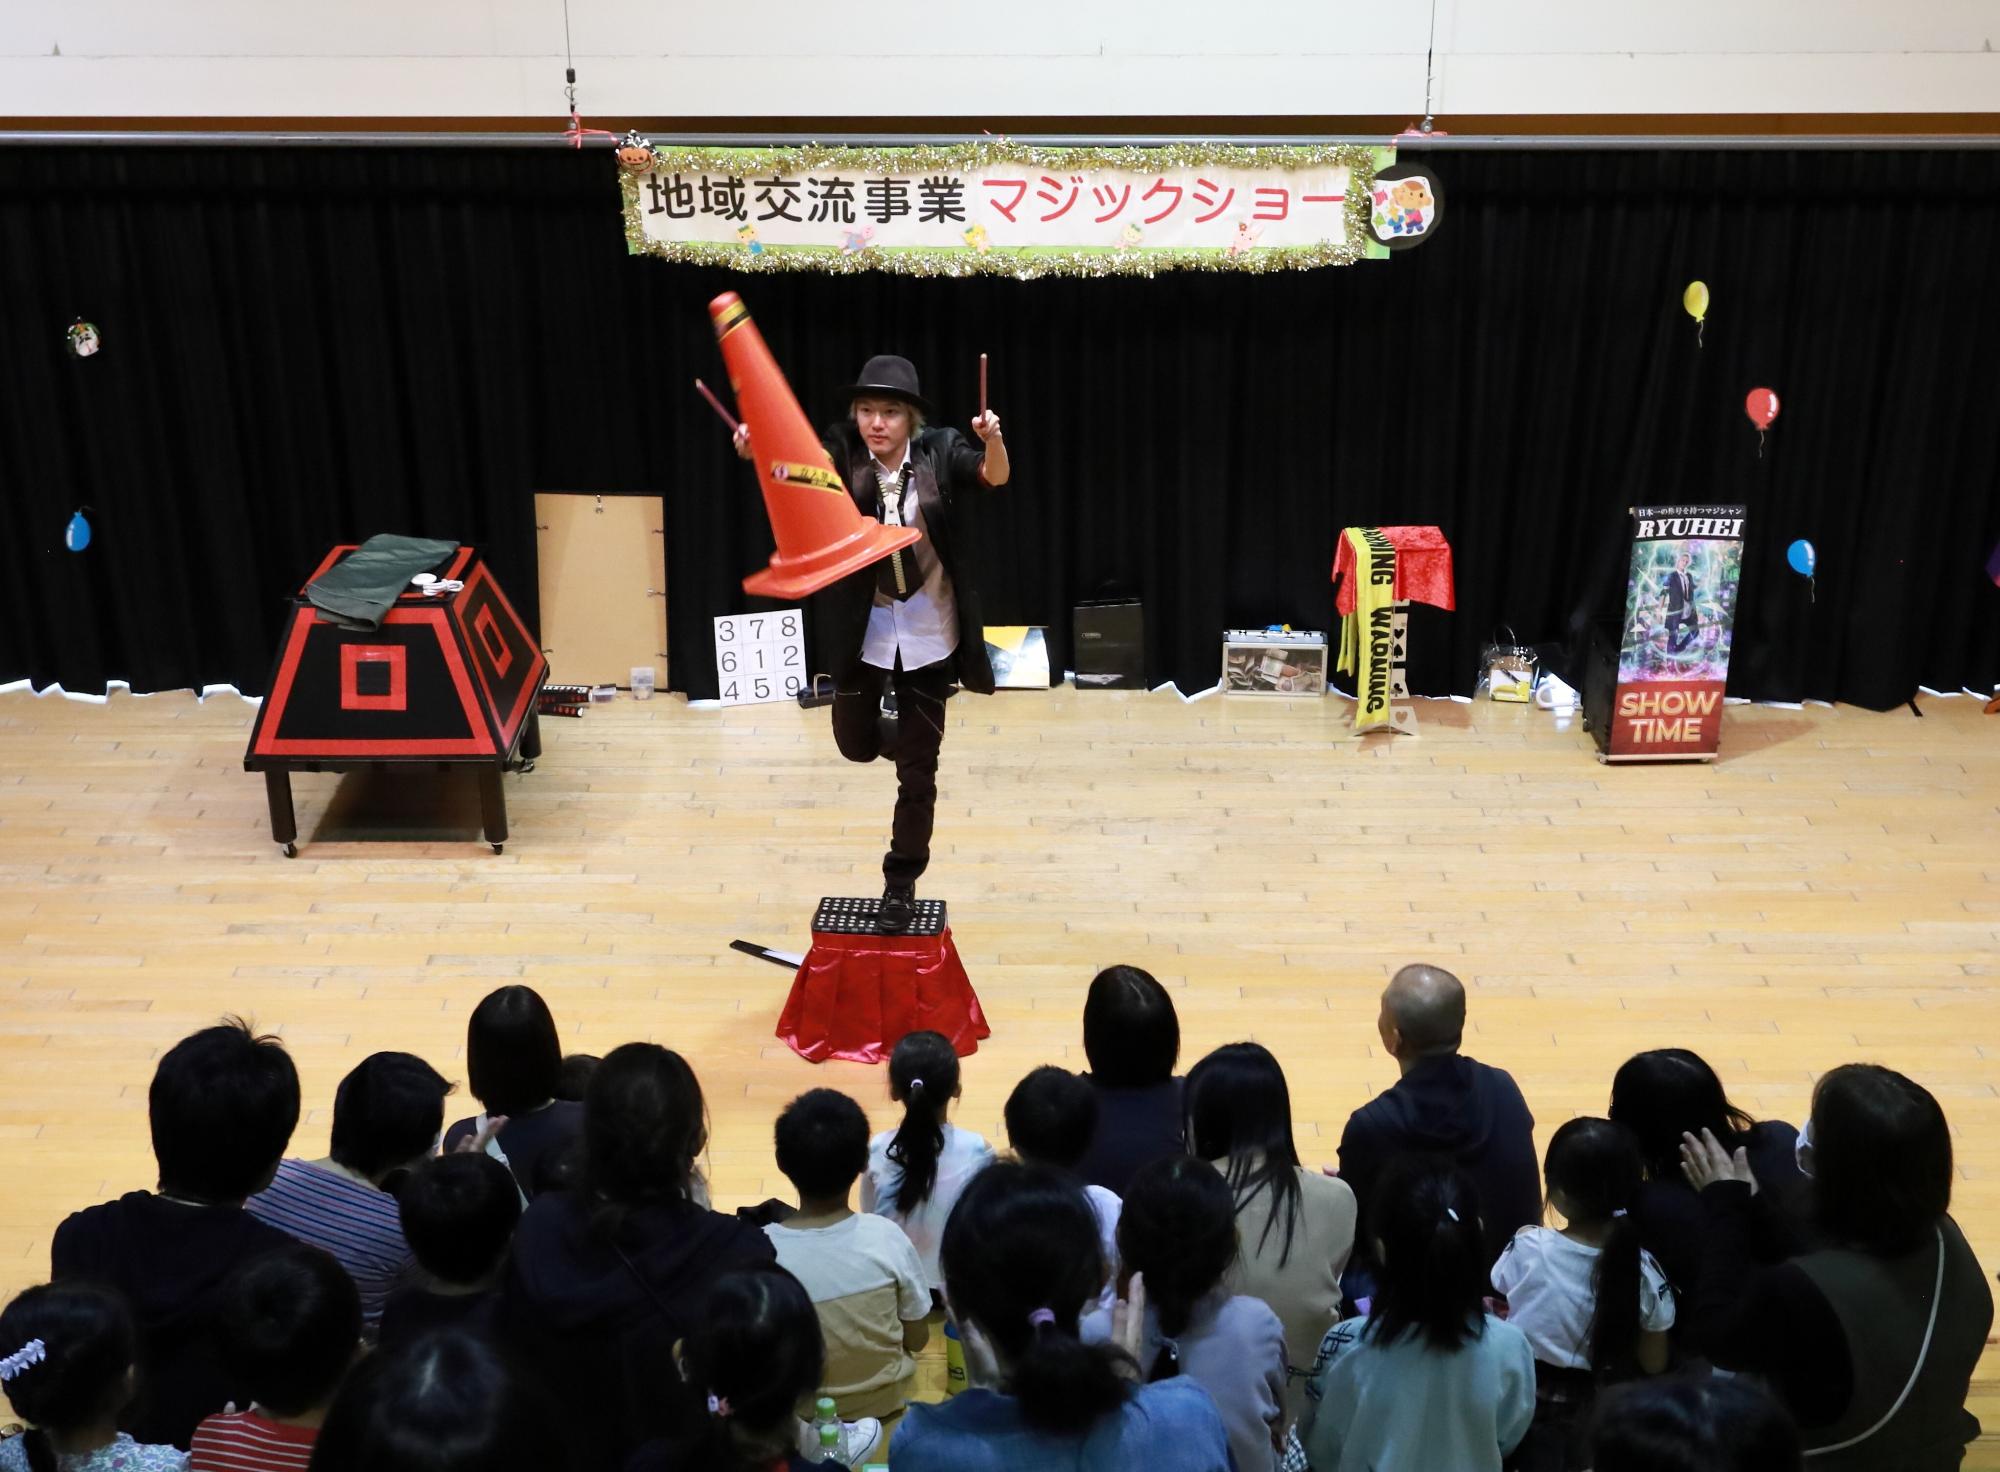 マジシャンの中村龍平さんが踏み台の上でパイロンを手を触れずに宙に浮かしている写真